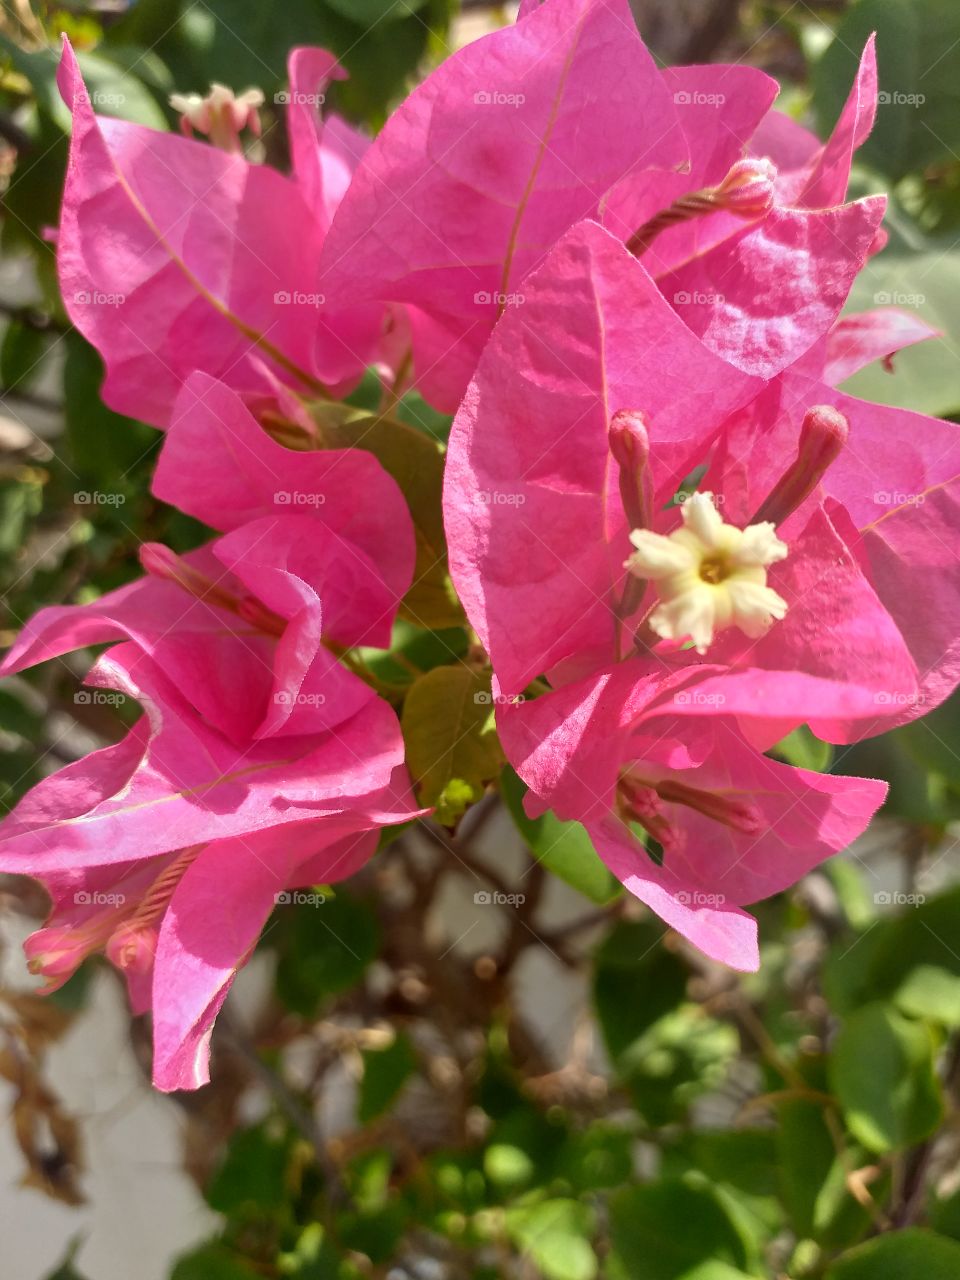 naturel pink flower in the garden